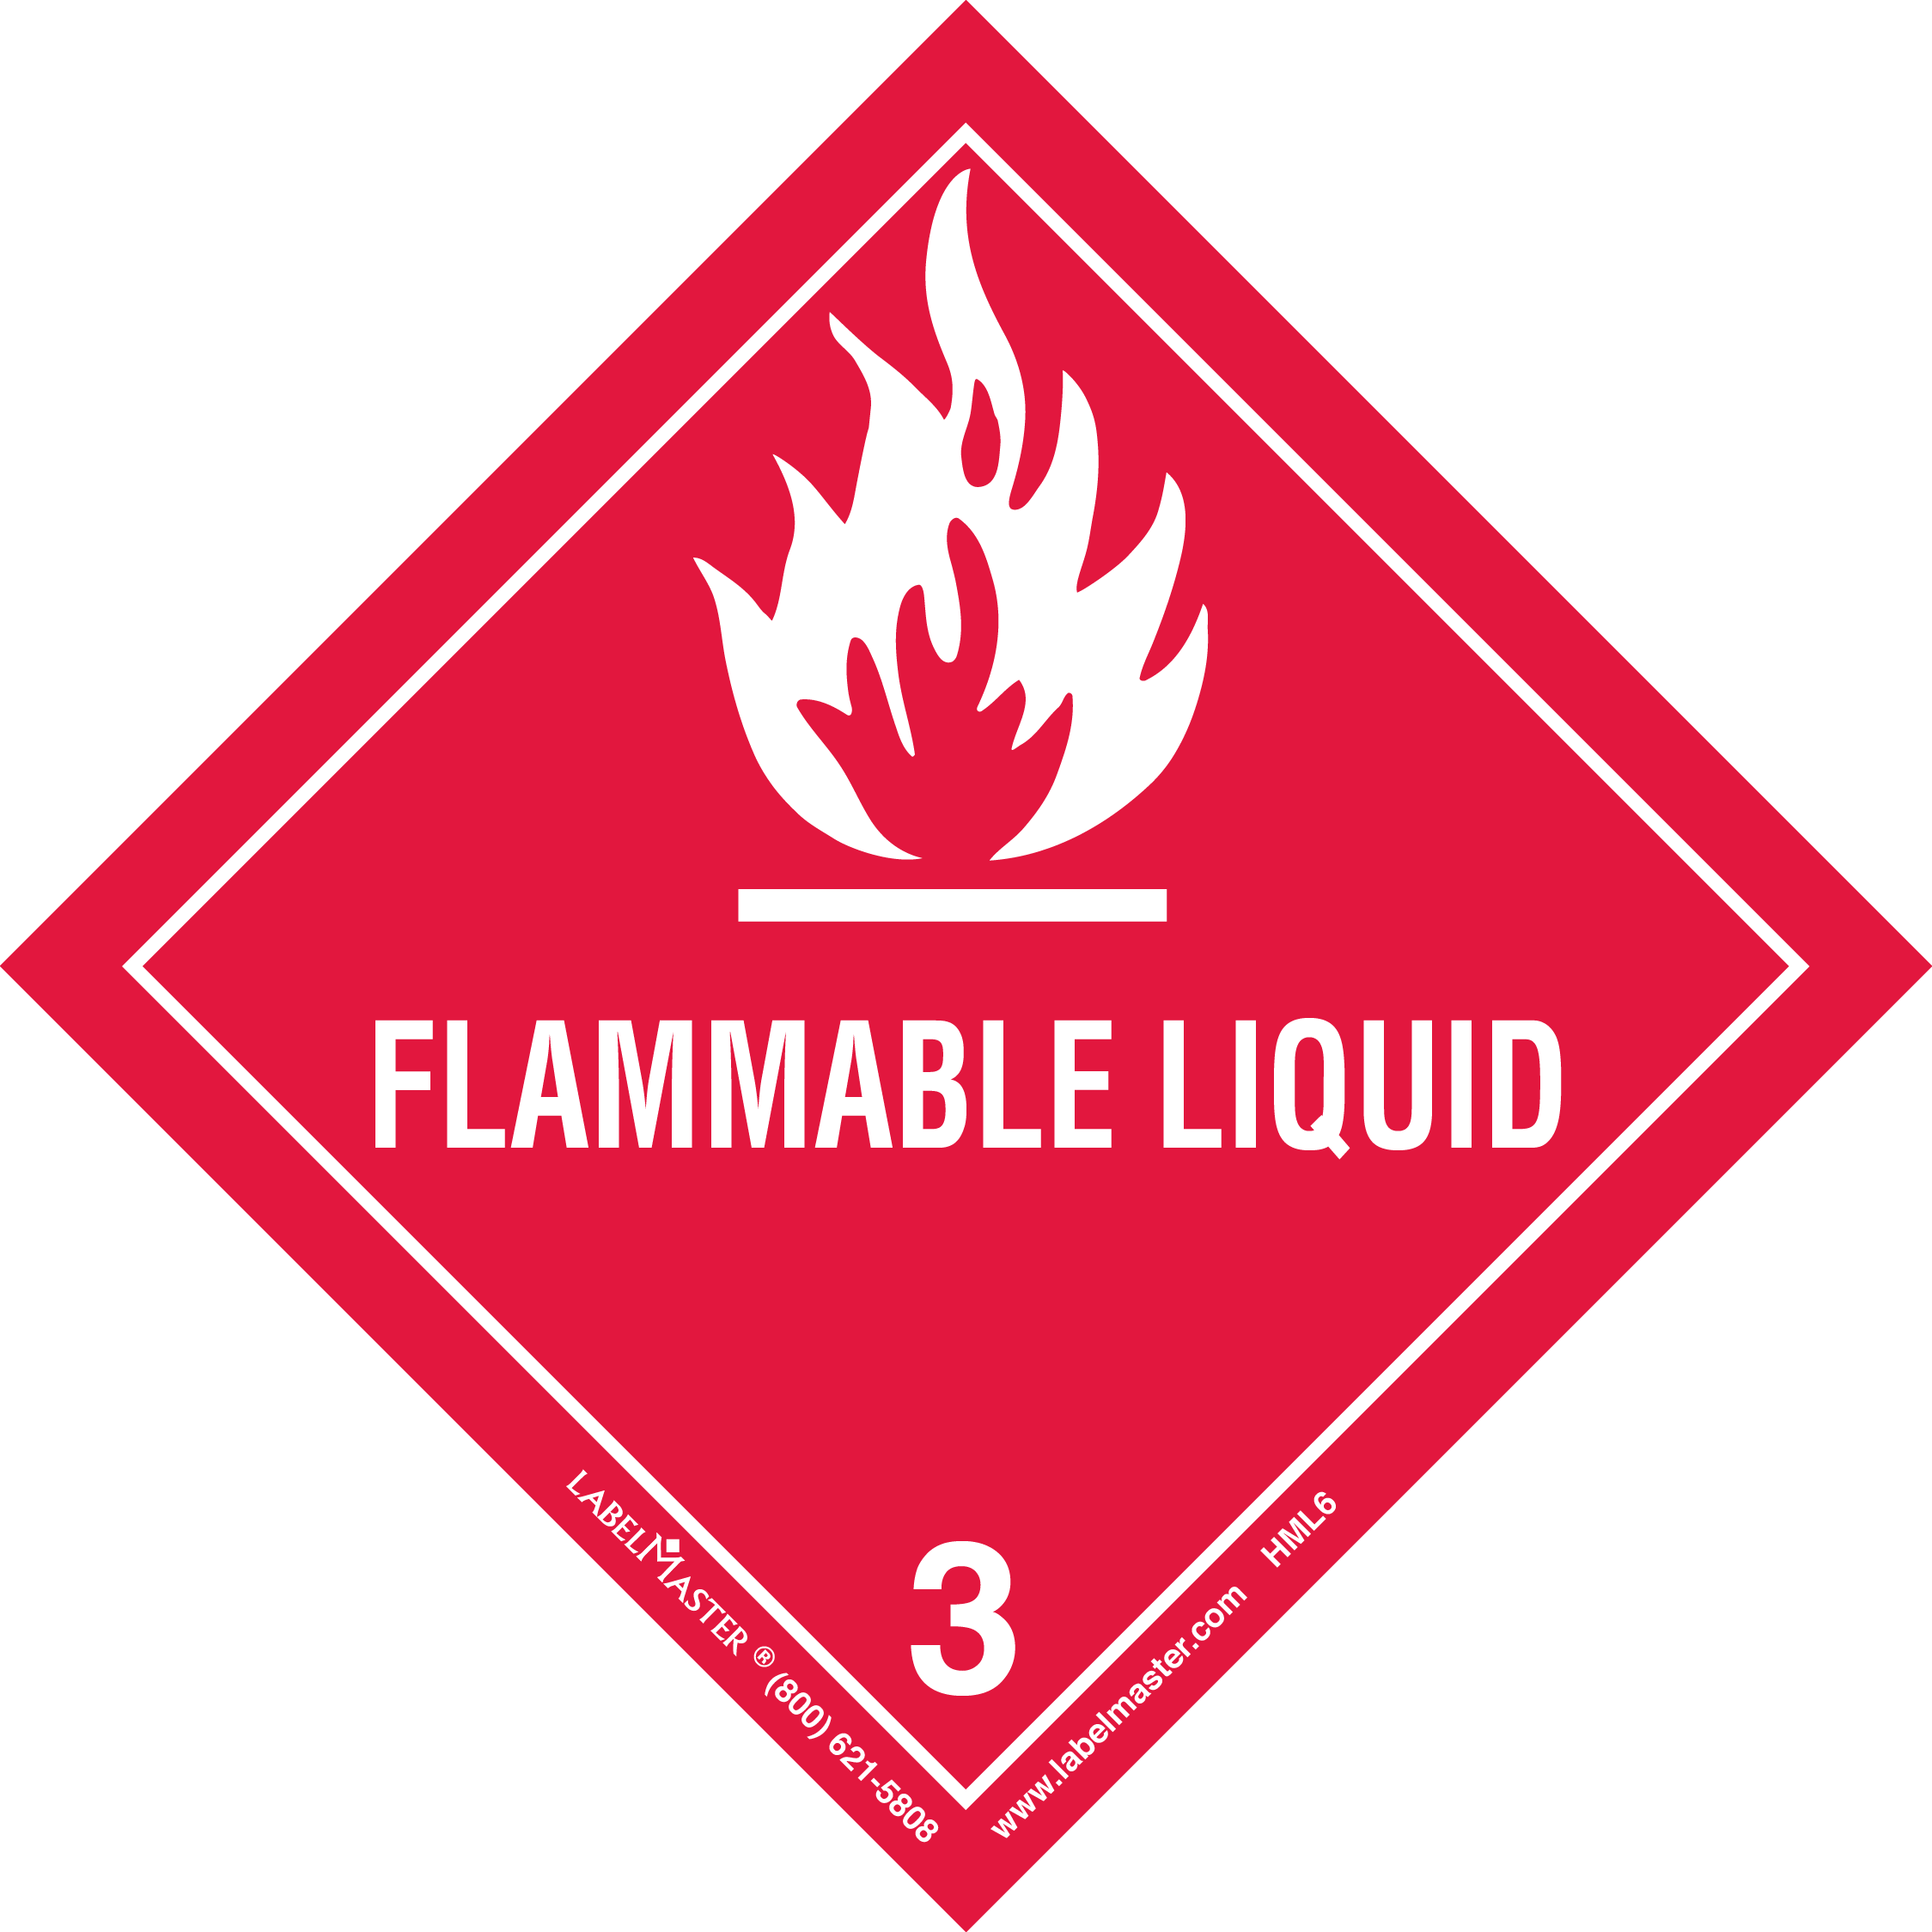 UN1267 - DOT Hazard Class 3 - Flammable Liquid Worded Label